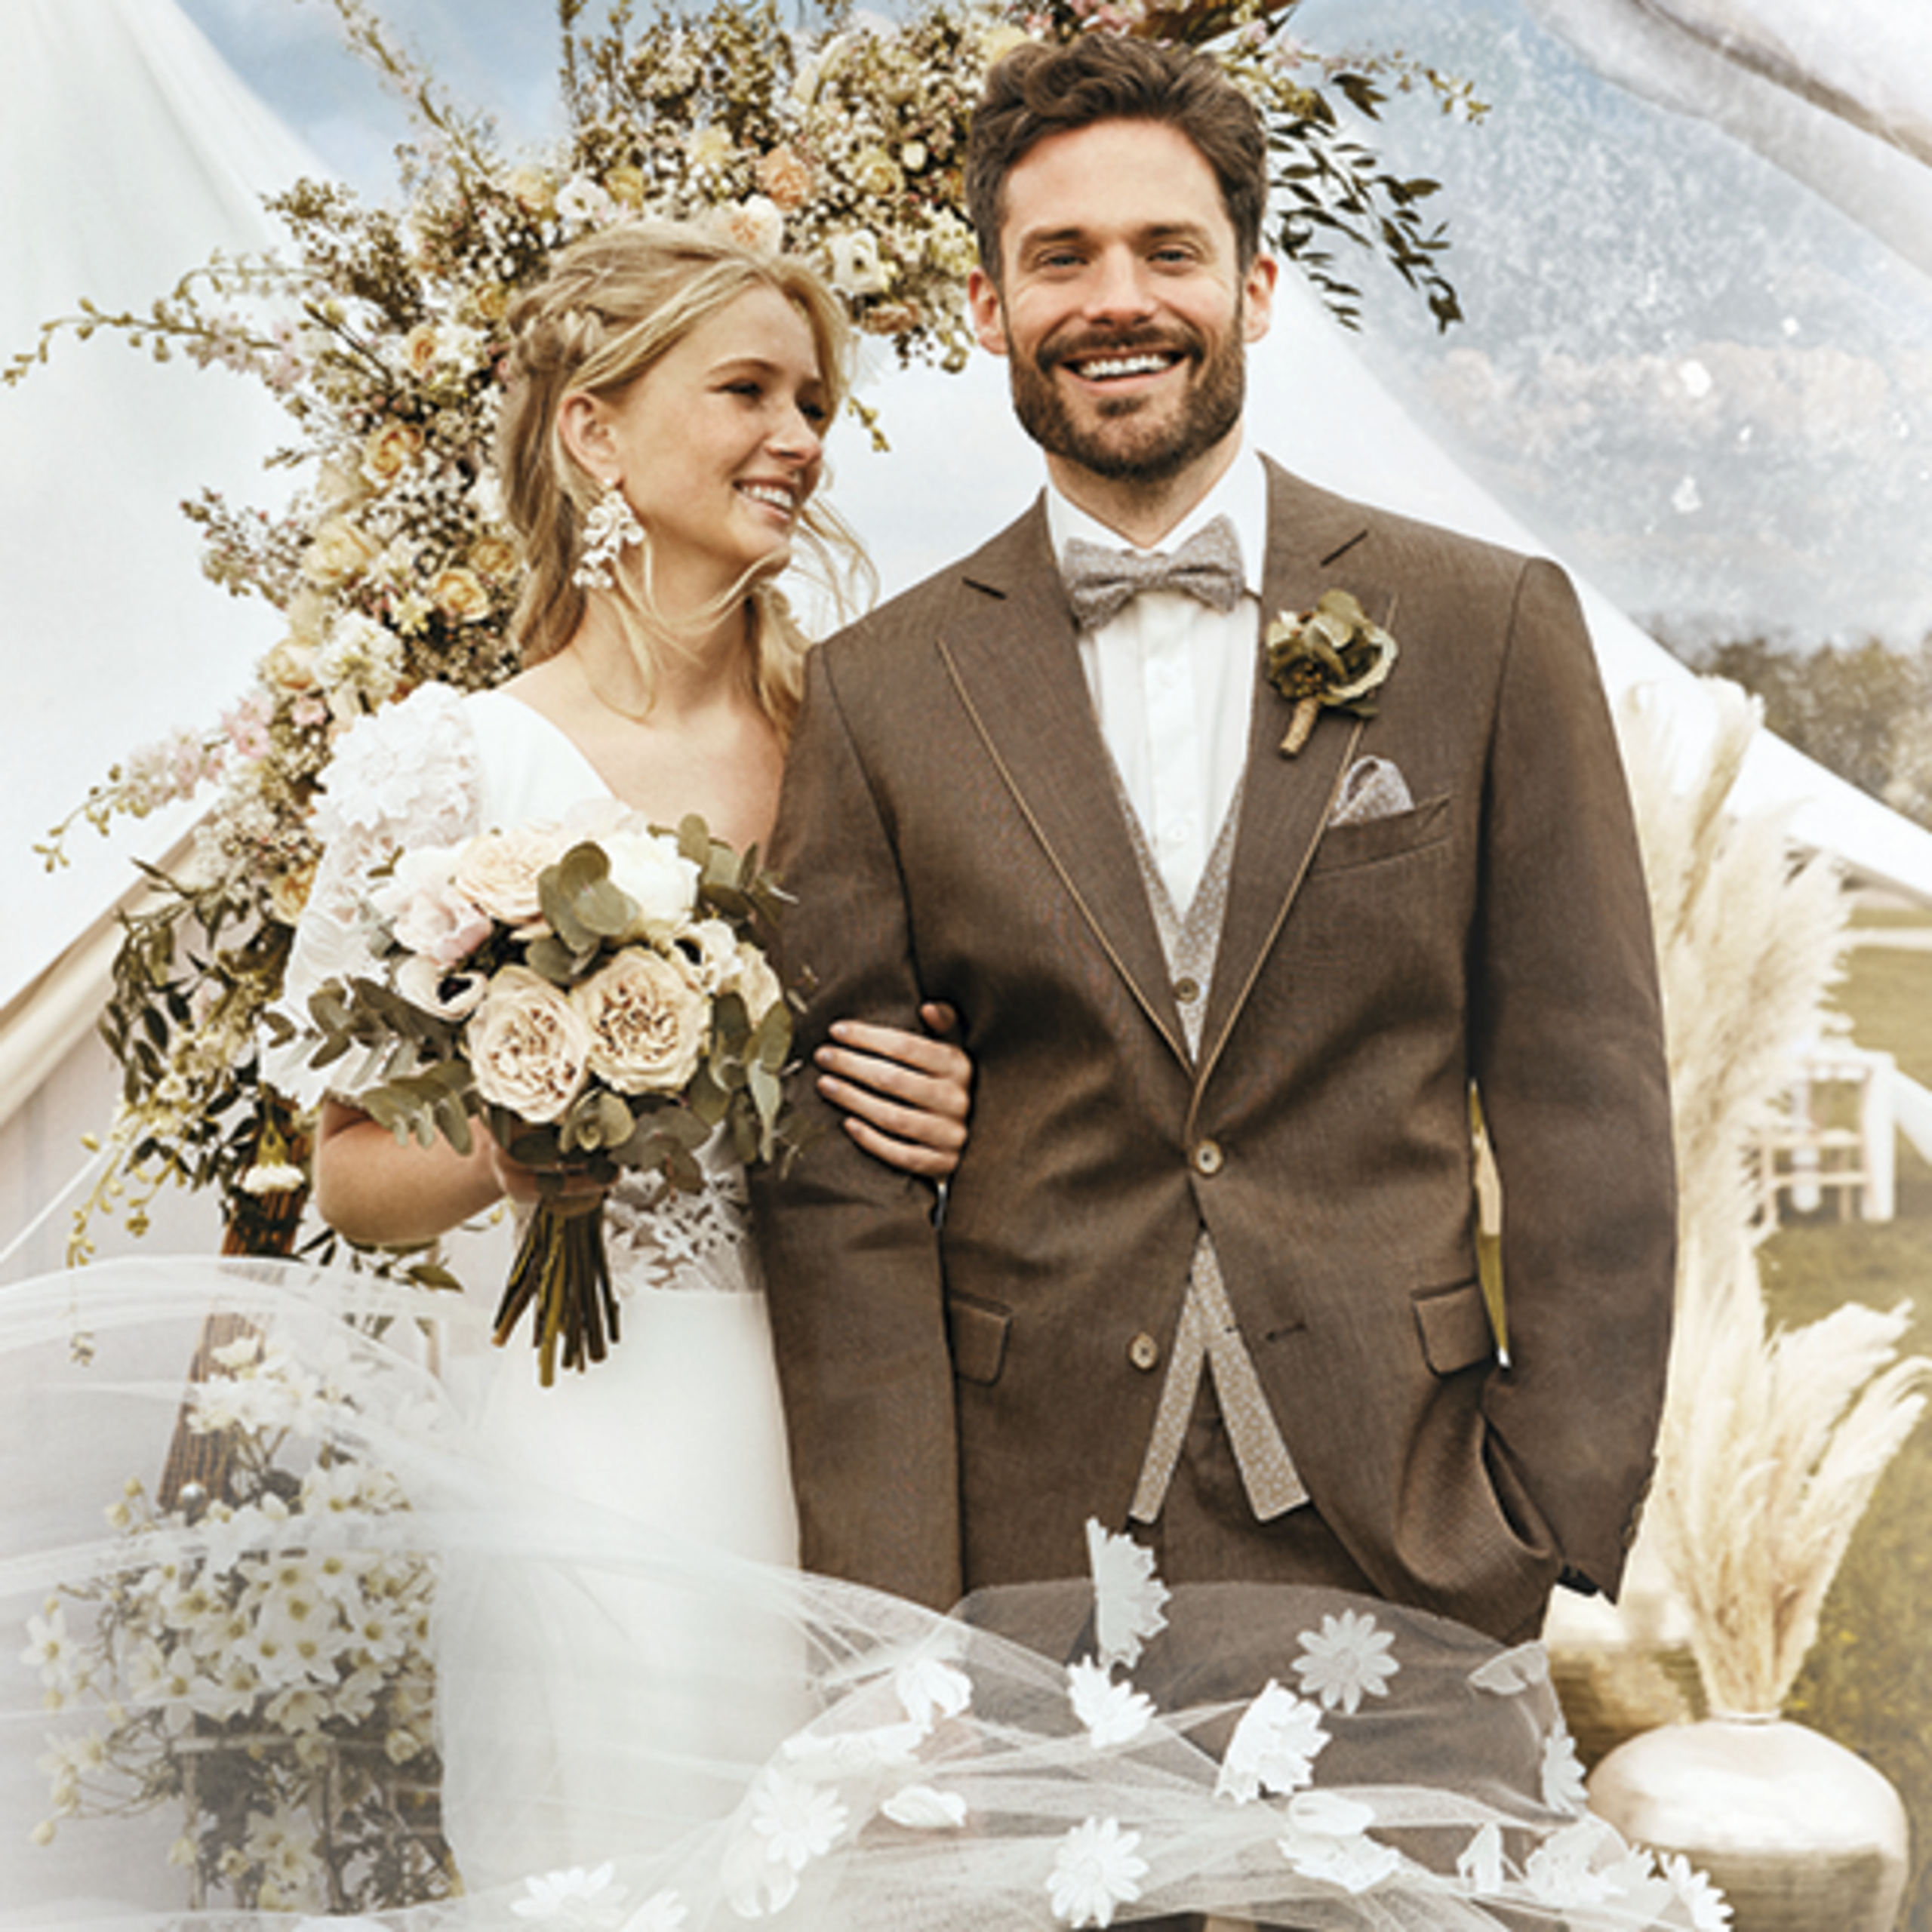 Erlebe die neue GLAM VINTAGE Wedding Hochzeitsanzug Kollektion 20245 von ATELIER TORINO - Look 1: Moderner Wolle / Leinen Look mit Baumwollpaspel am Revers